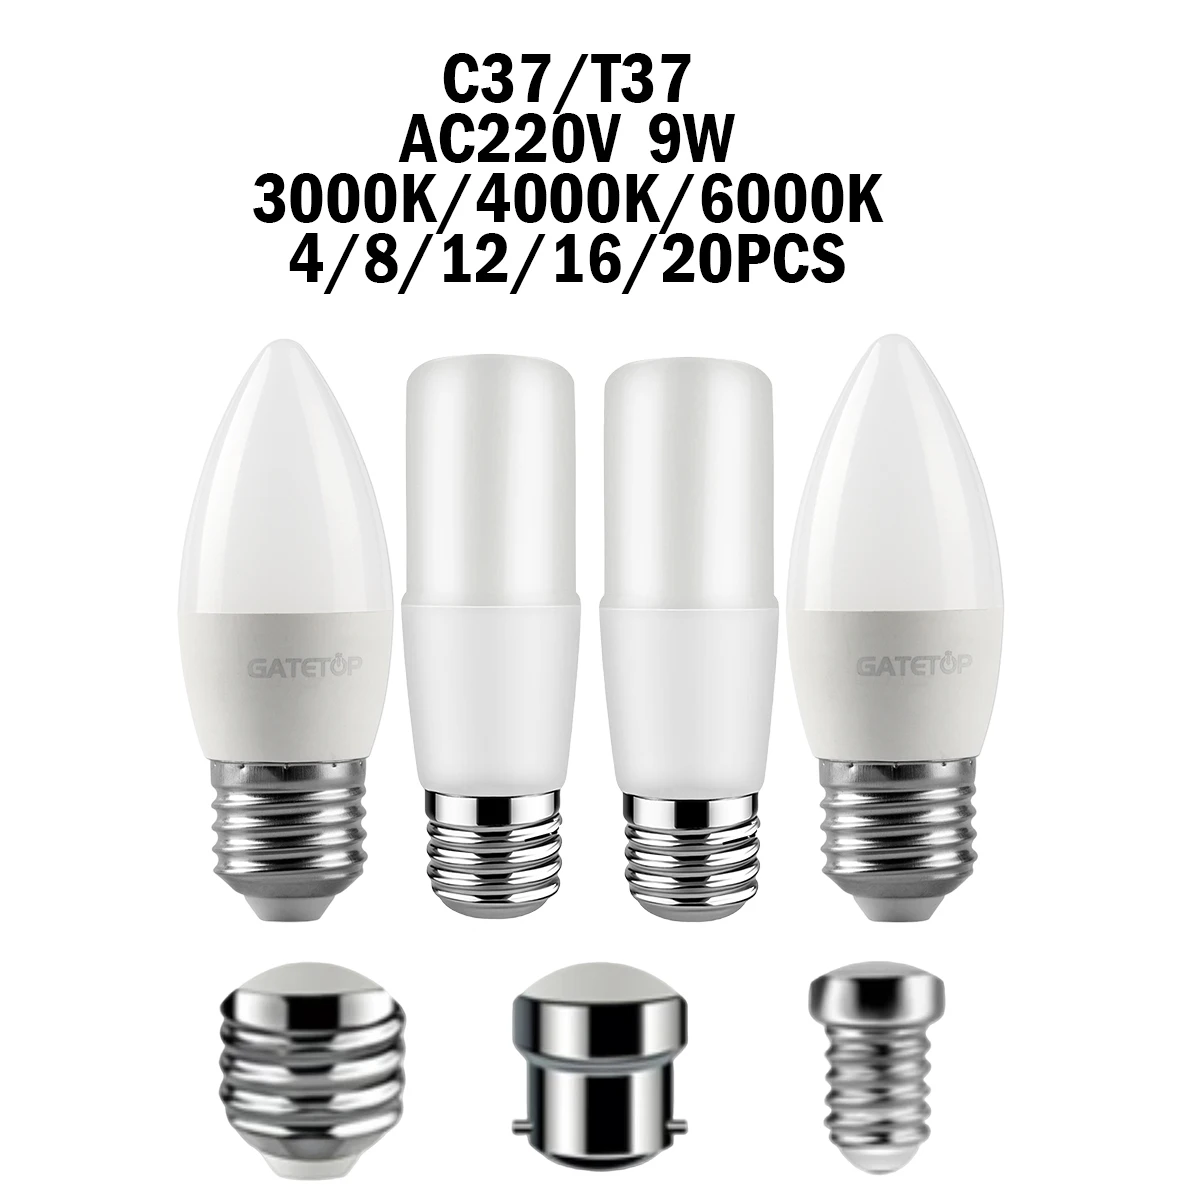 

LED Bulb 4-20Pcs T37/C37 9W E27/E14/B22 AC220V 3000K-6000K No Strobe High Lumen CRI 80+ Light for Home, Office Lighting